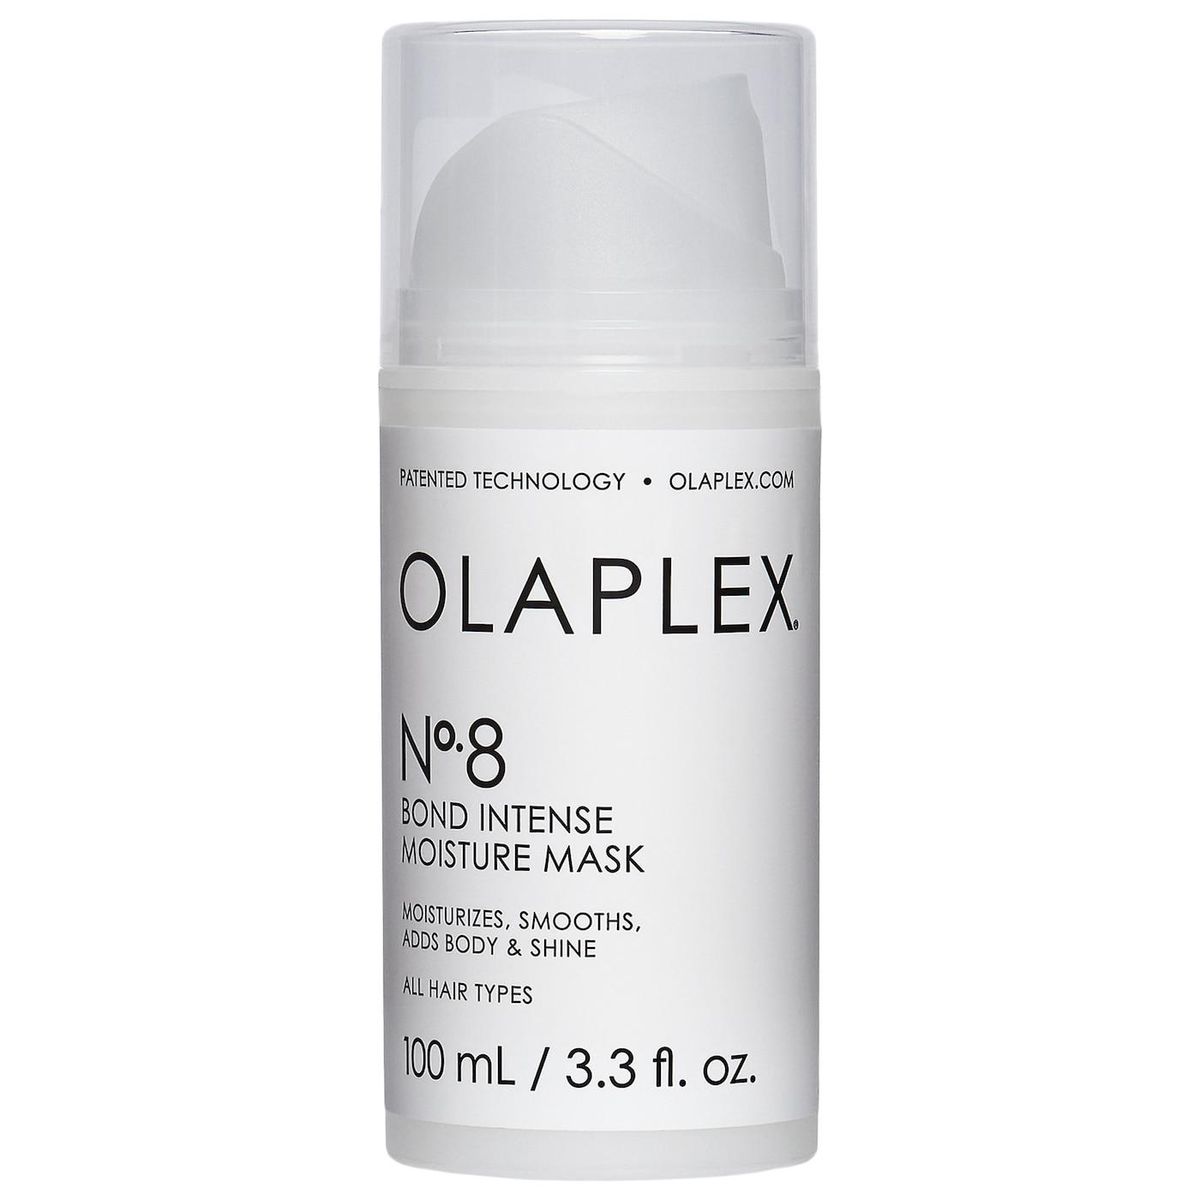 olaplex no 8 bond intense moisture mask